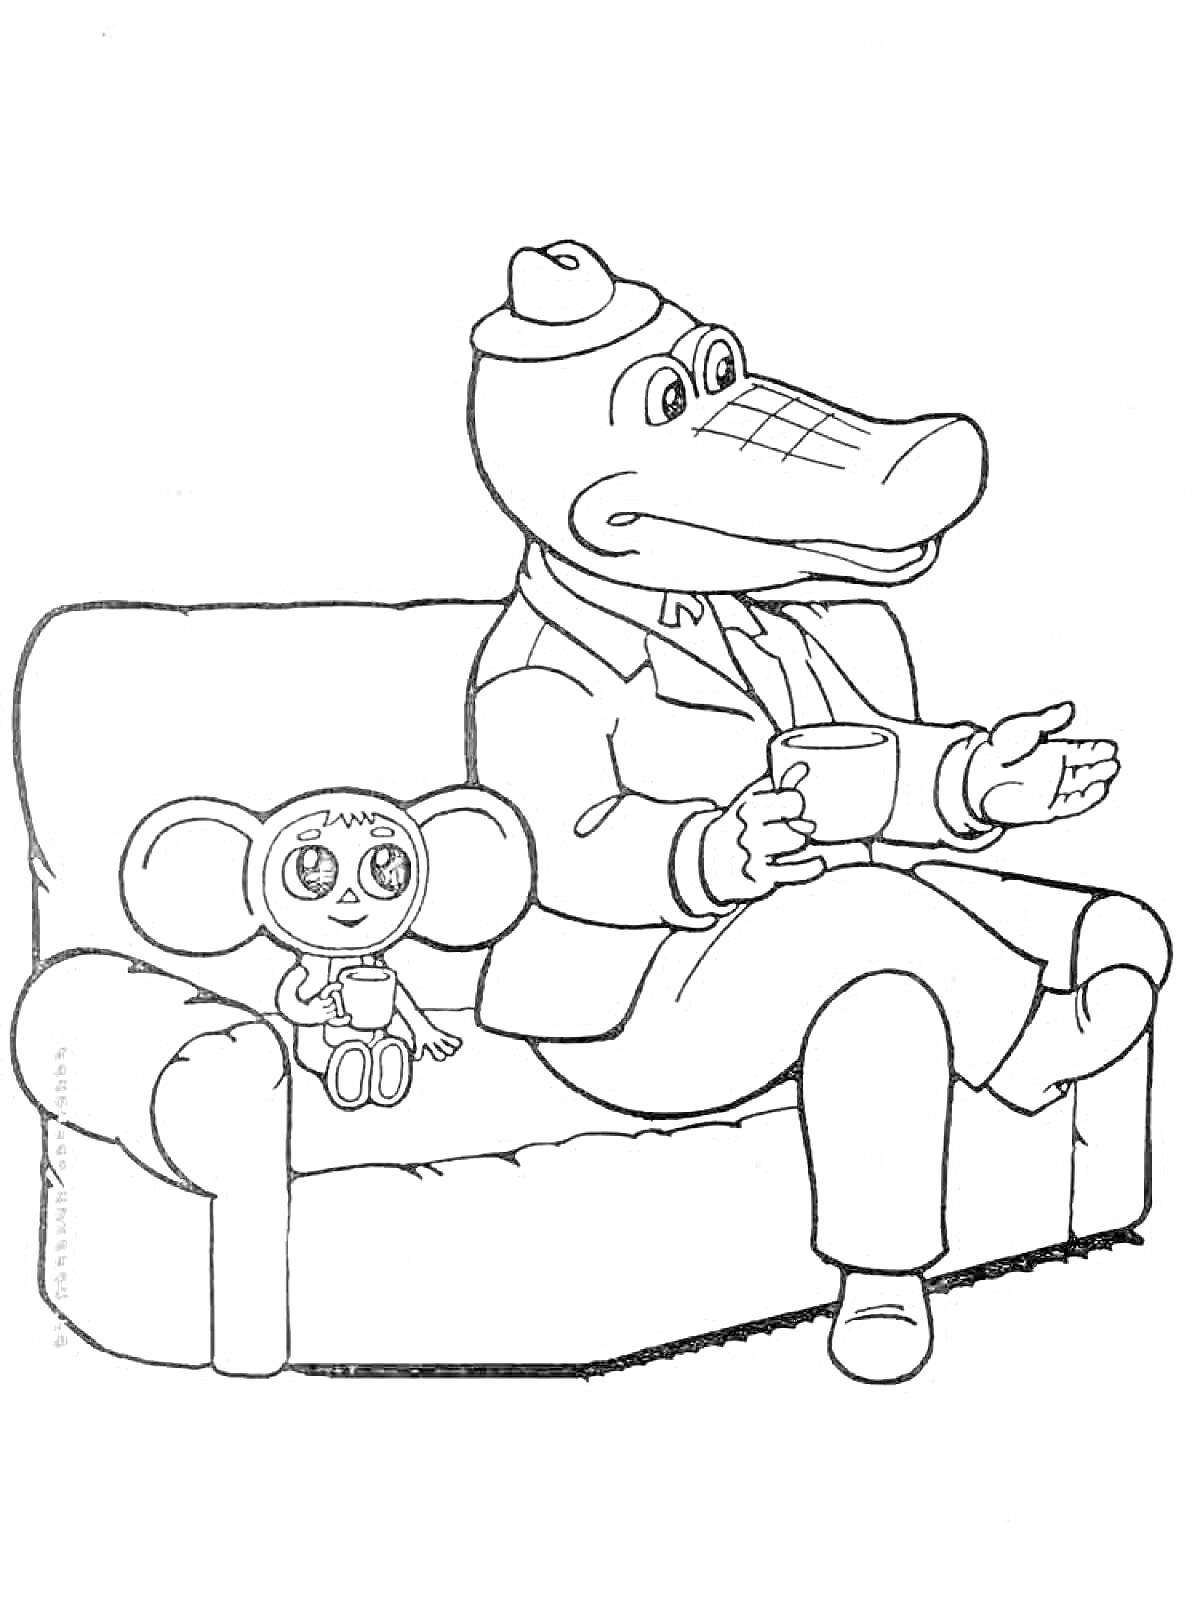 Раскраска Крокодил Гена с Чебурашкой на диване, Гена держит чашку